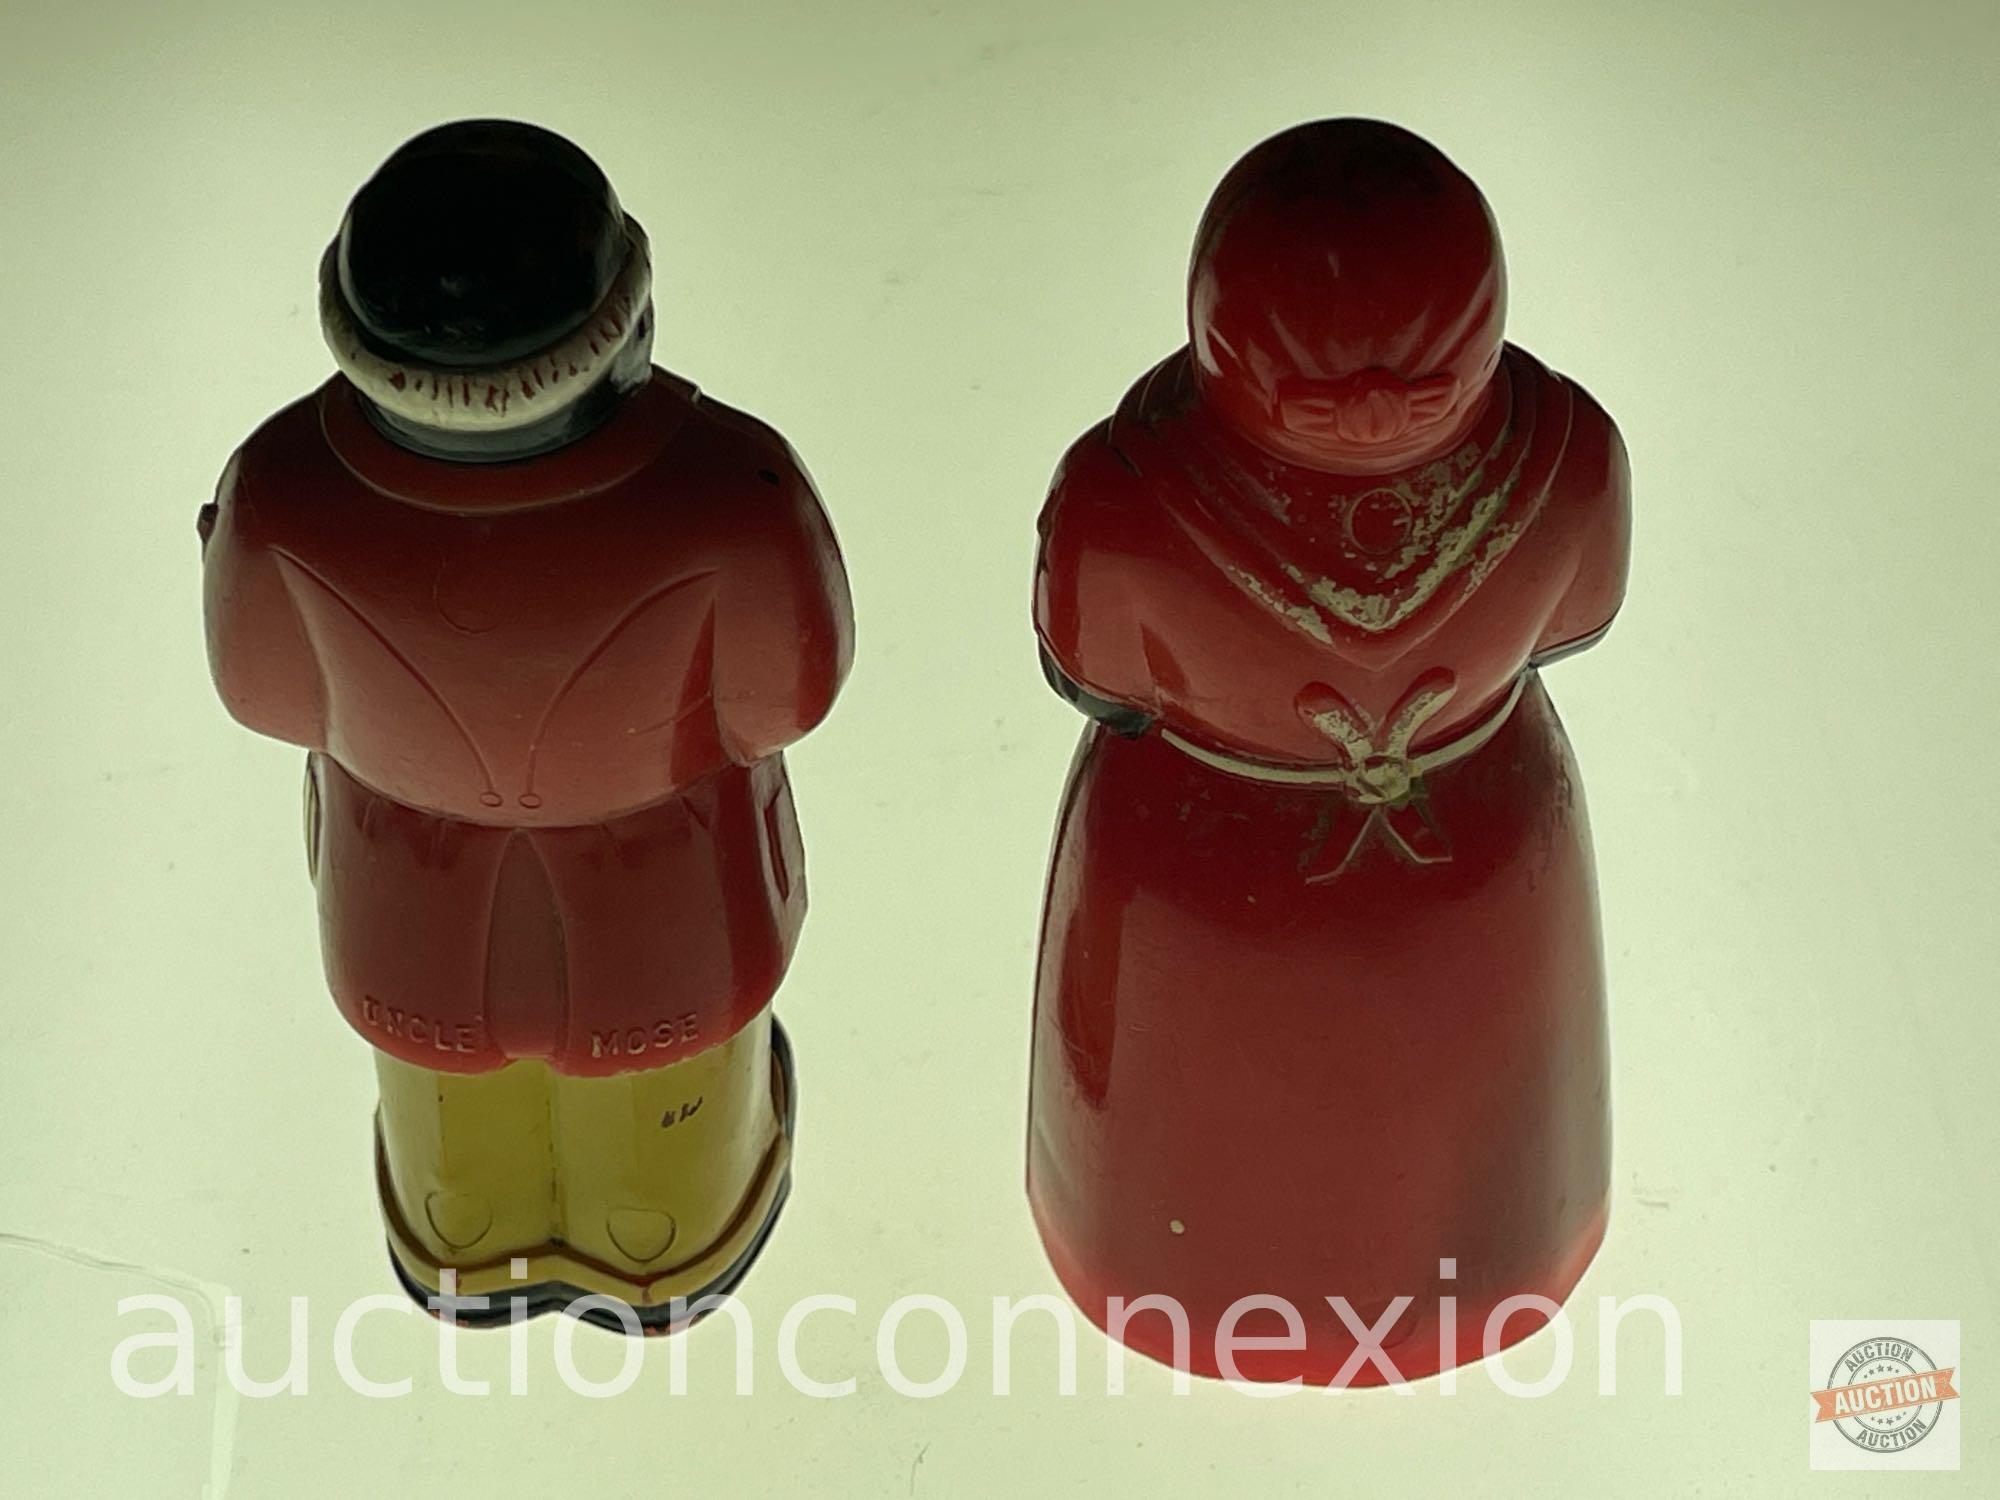 Black Americana - Salt/pepper shakers, 1957 Mammie & Butler, 3.5"h, F & F Mold & Die Works, plastic